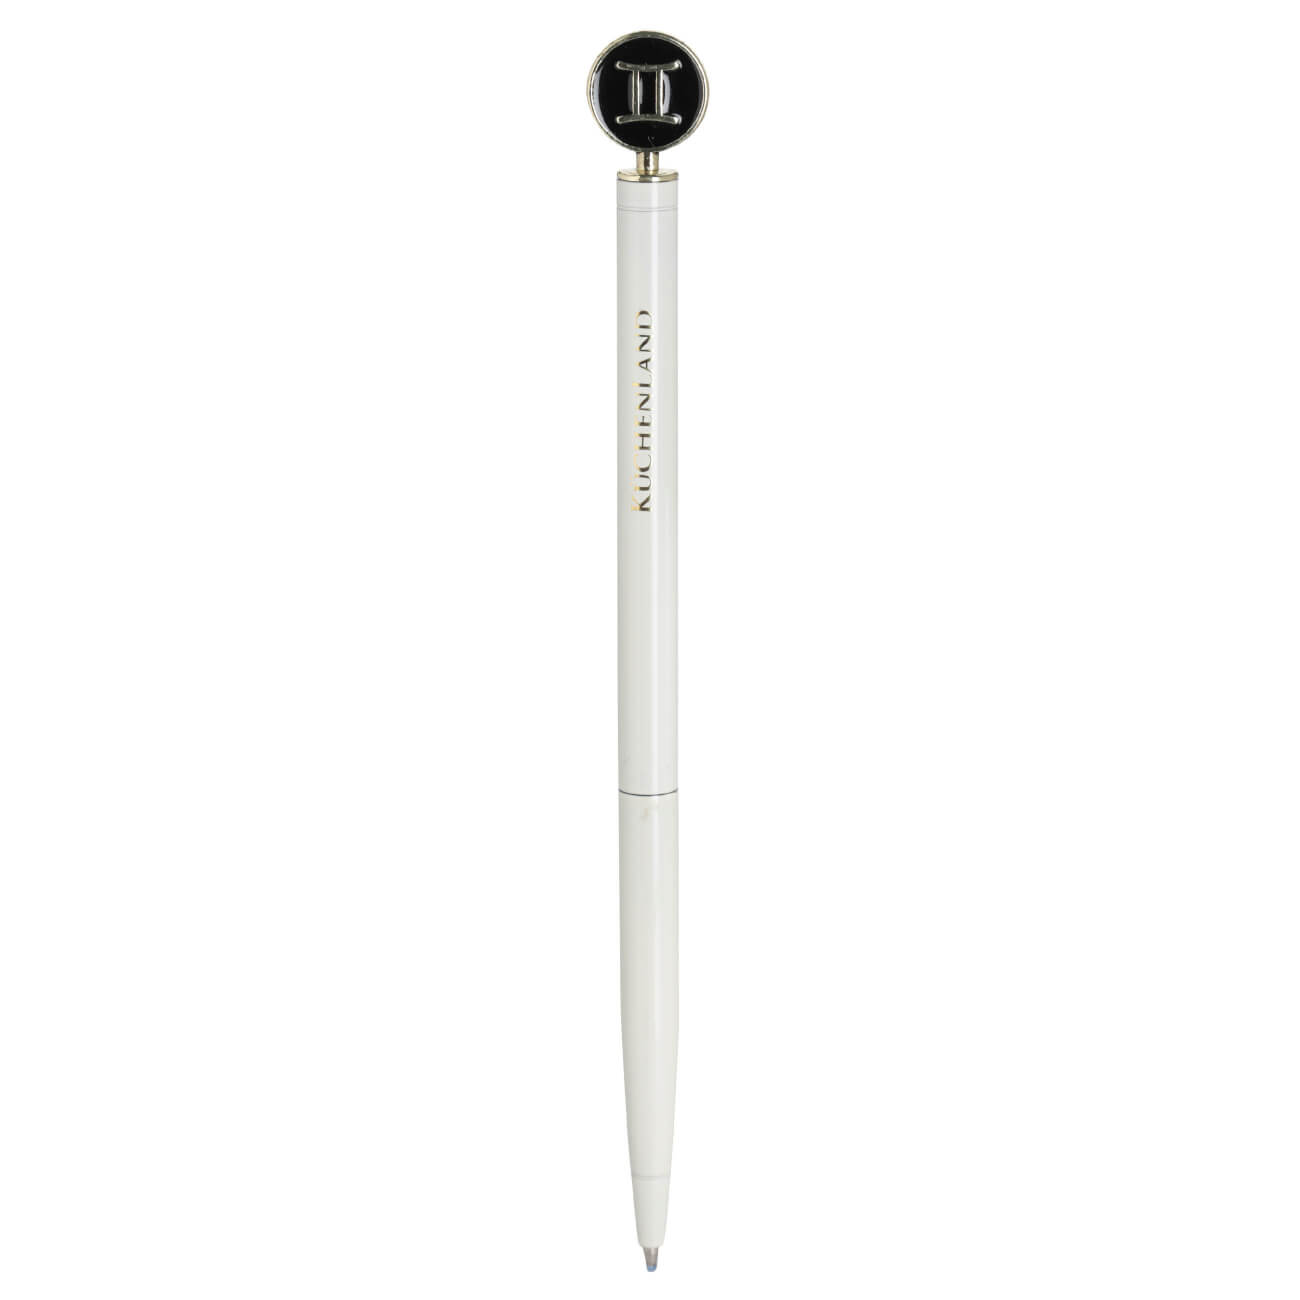 Ручка шариковая, 15 см, с фигуркой, сталь, молочно-золотистая, Близнецы, Zodiac ручка подарочная шариковая автоматическая